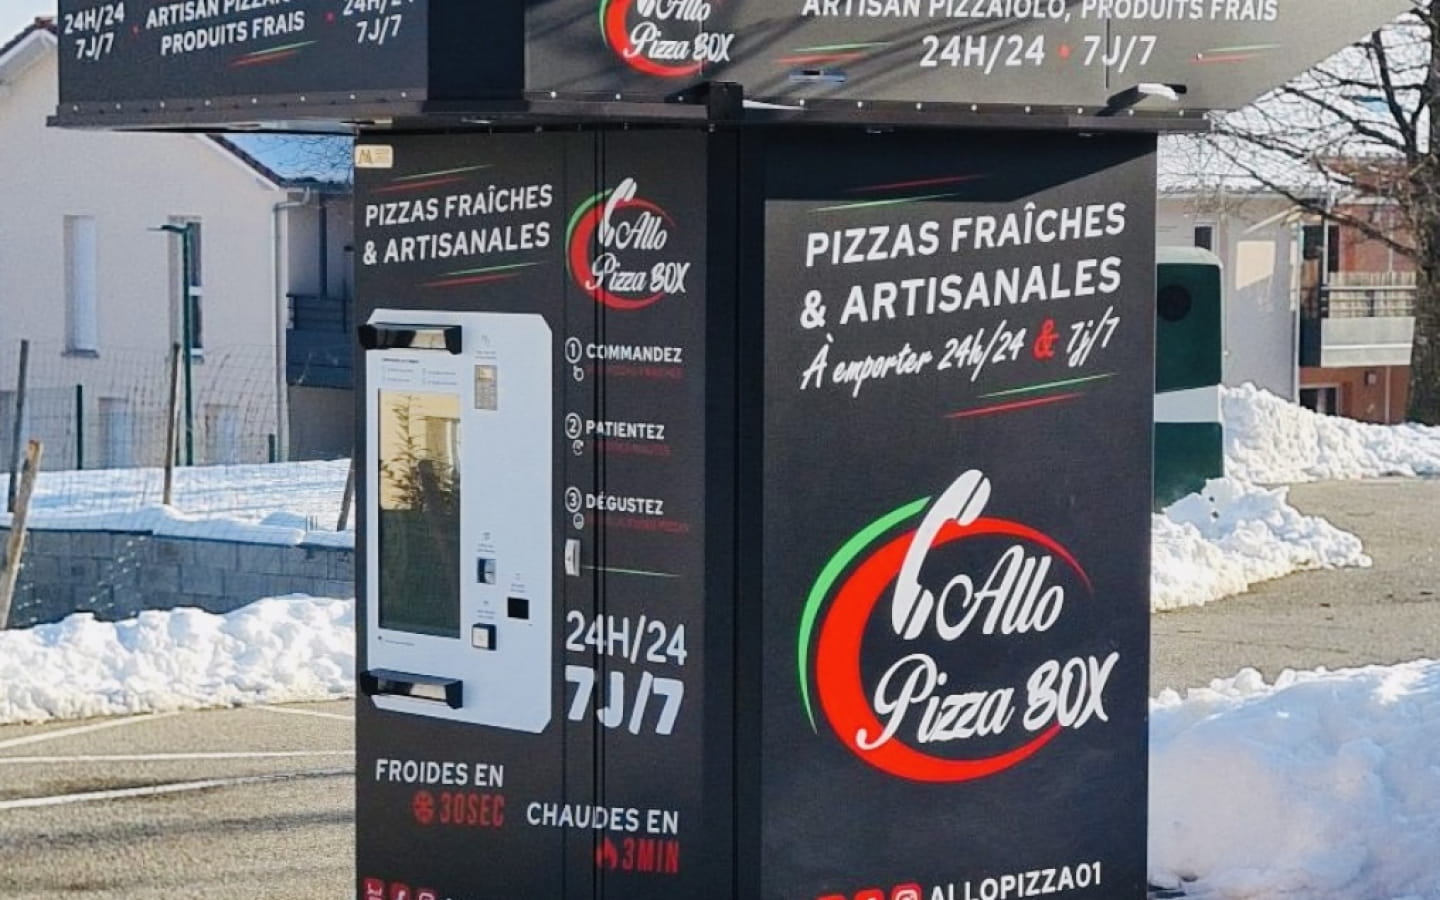 Allo Pizza Box